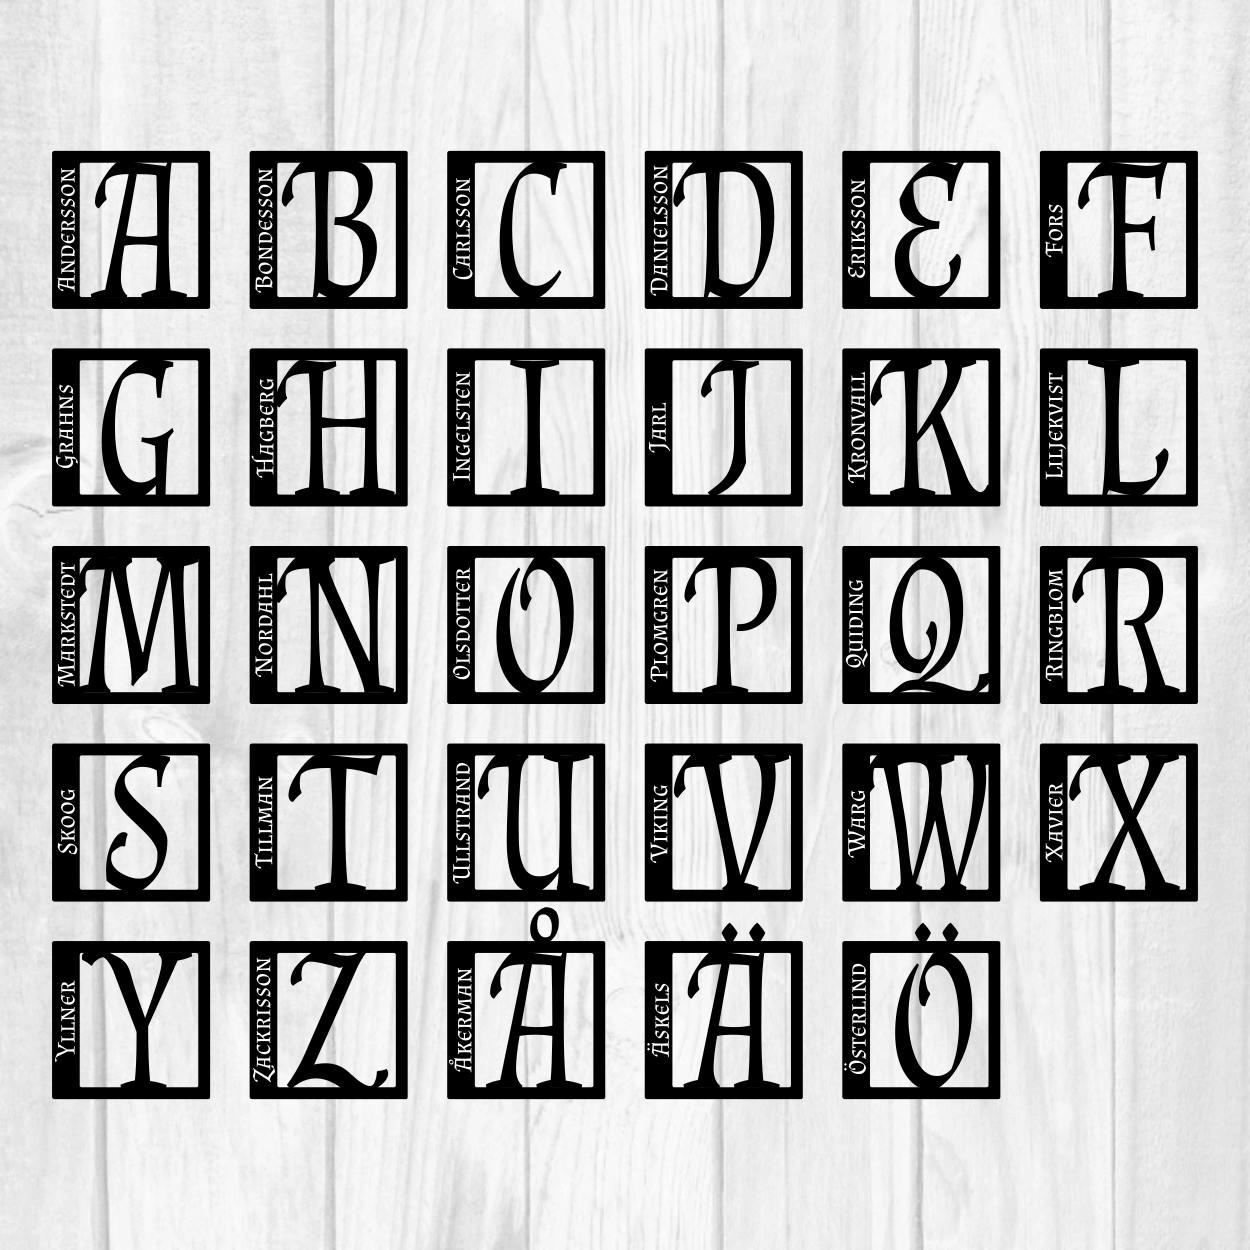 Bild av hur samtliga bokstäver i alfabetet ser ut i denna skyltdesign.